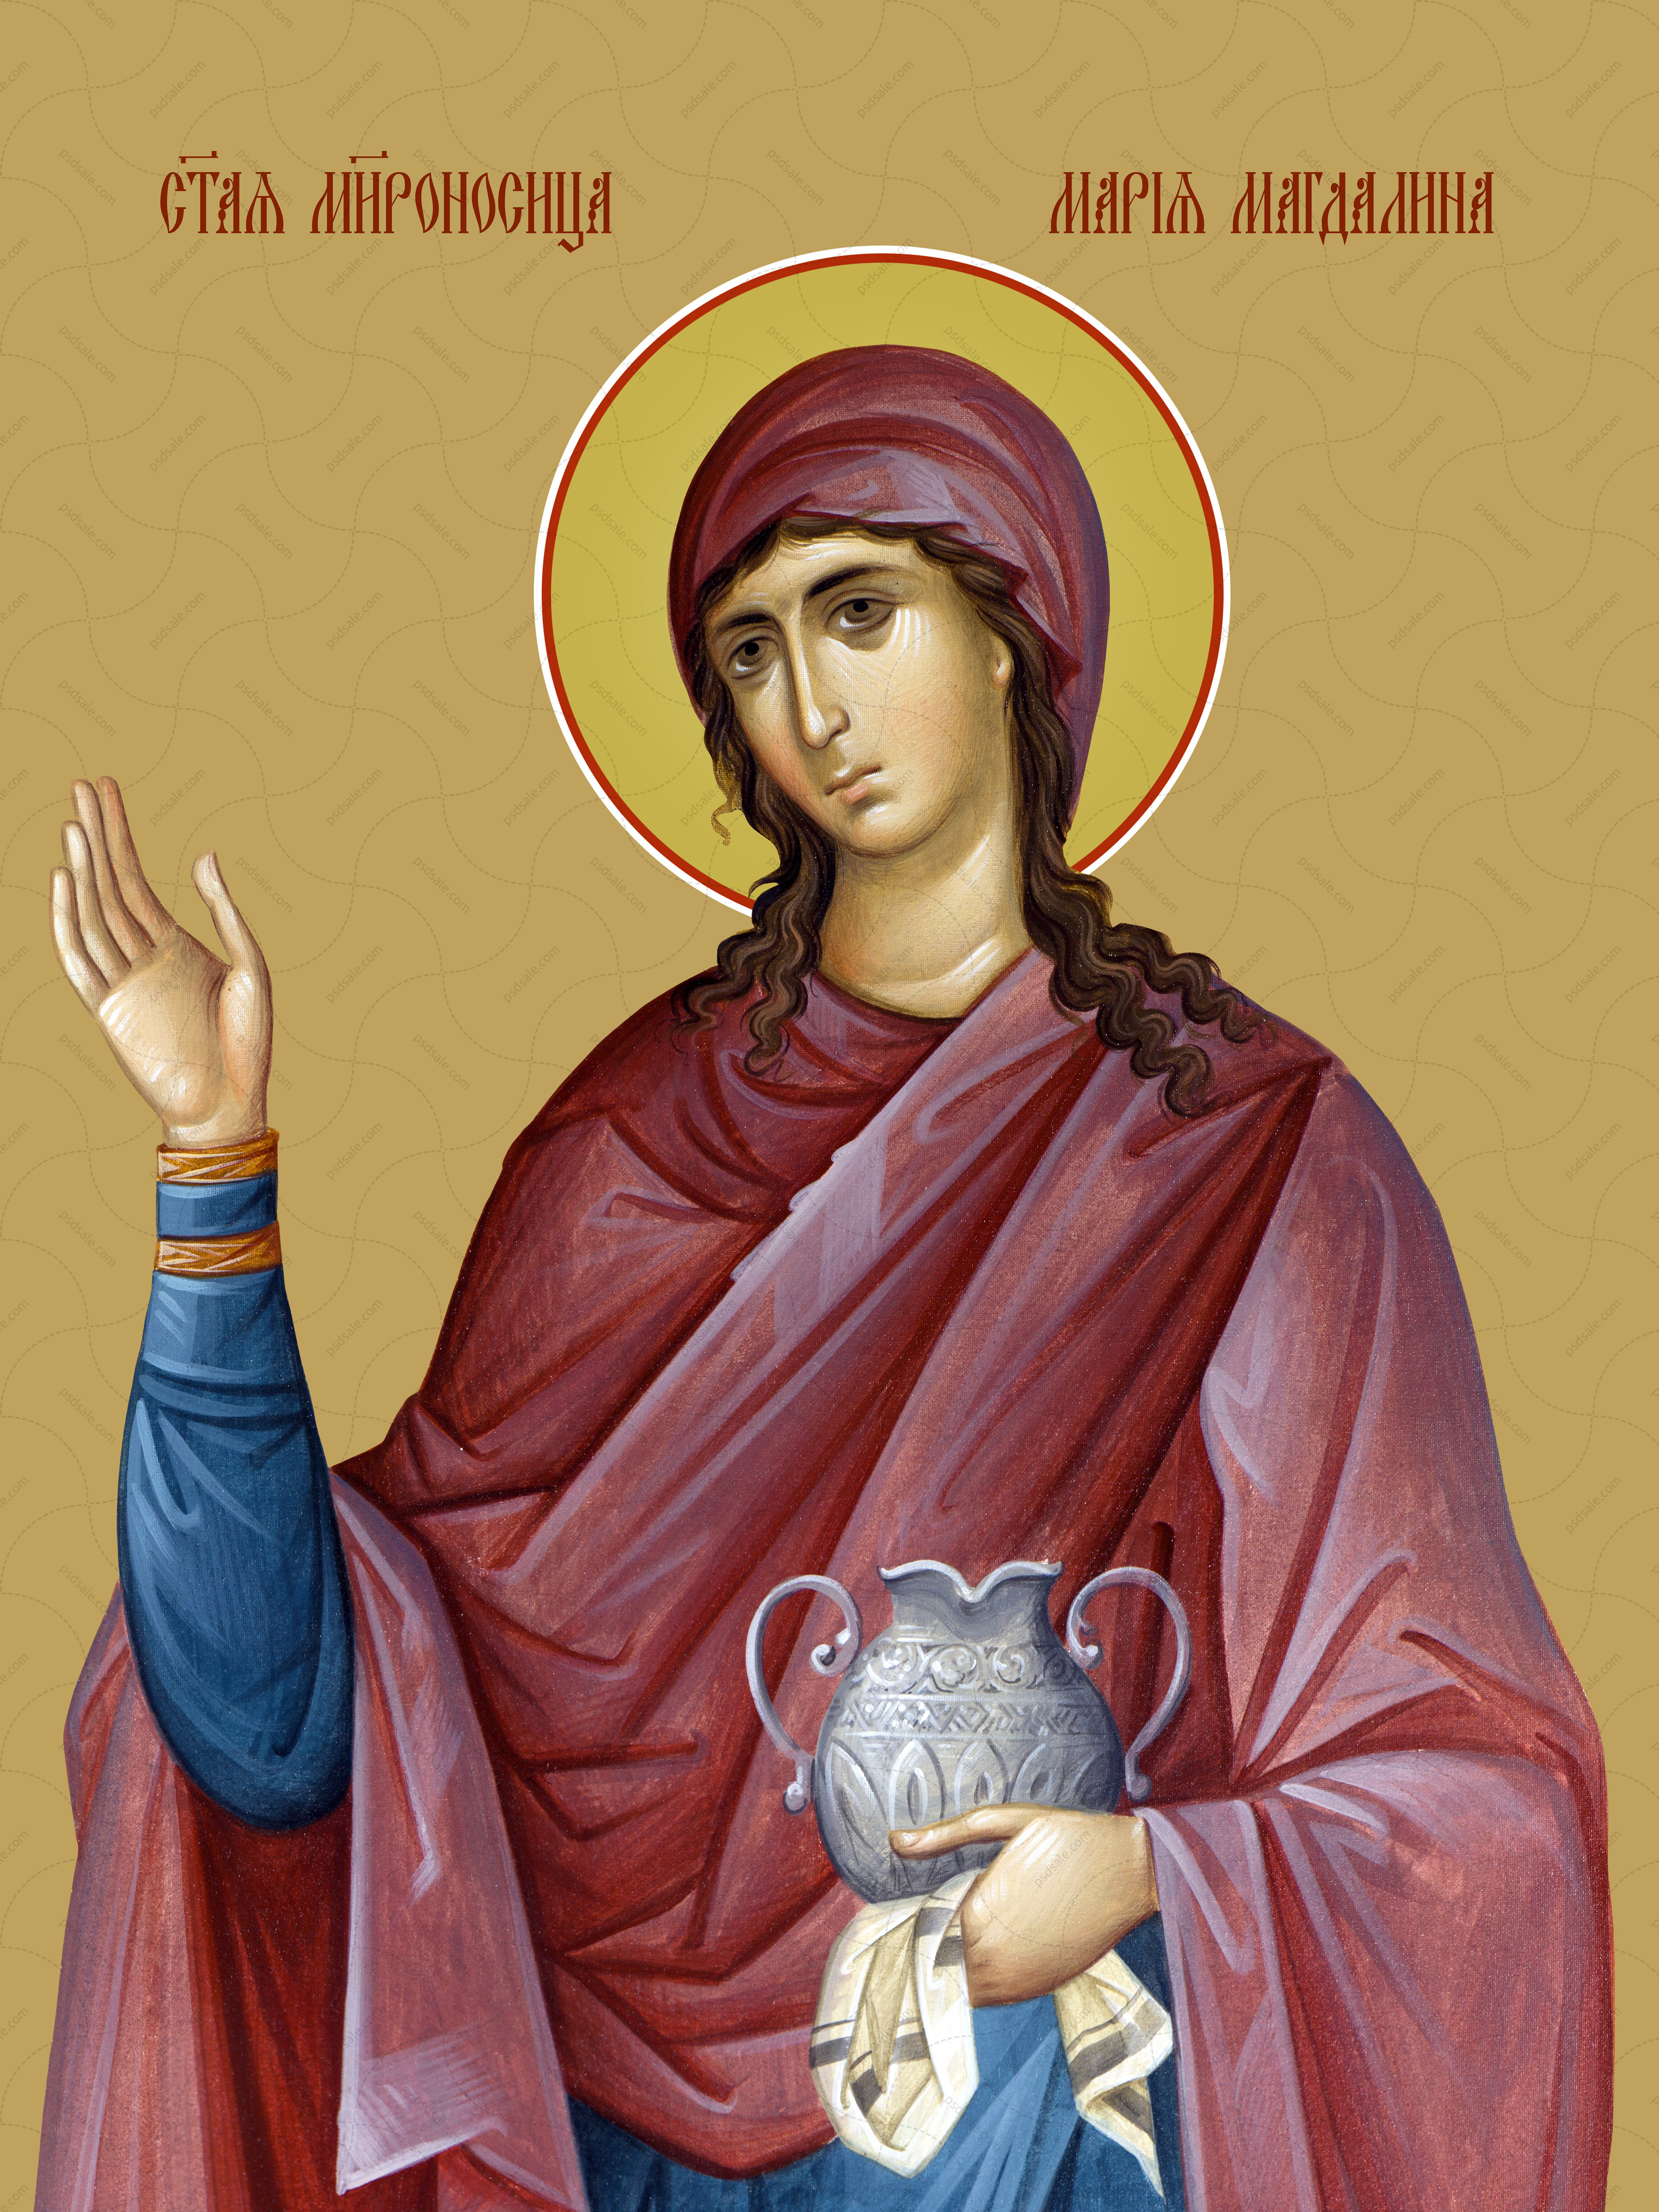 Mary Magdalene, saint